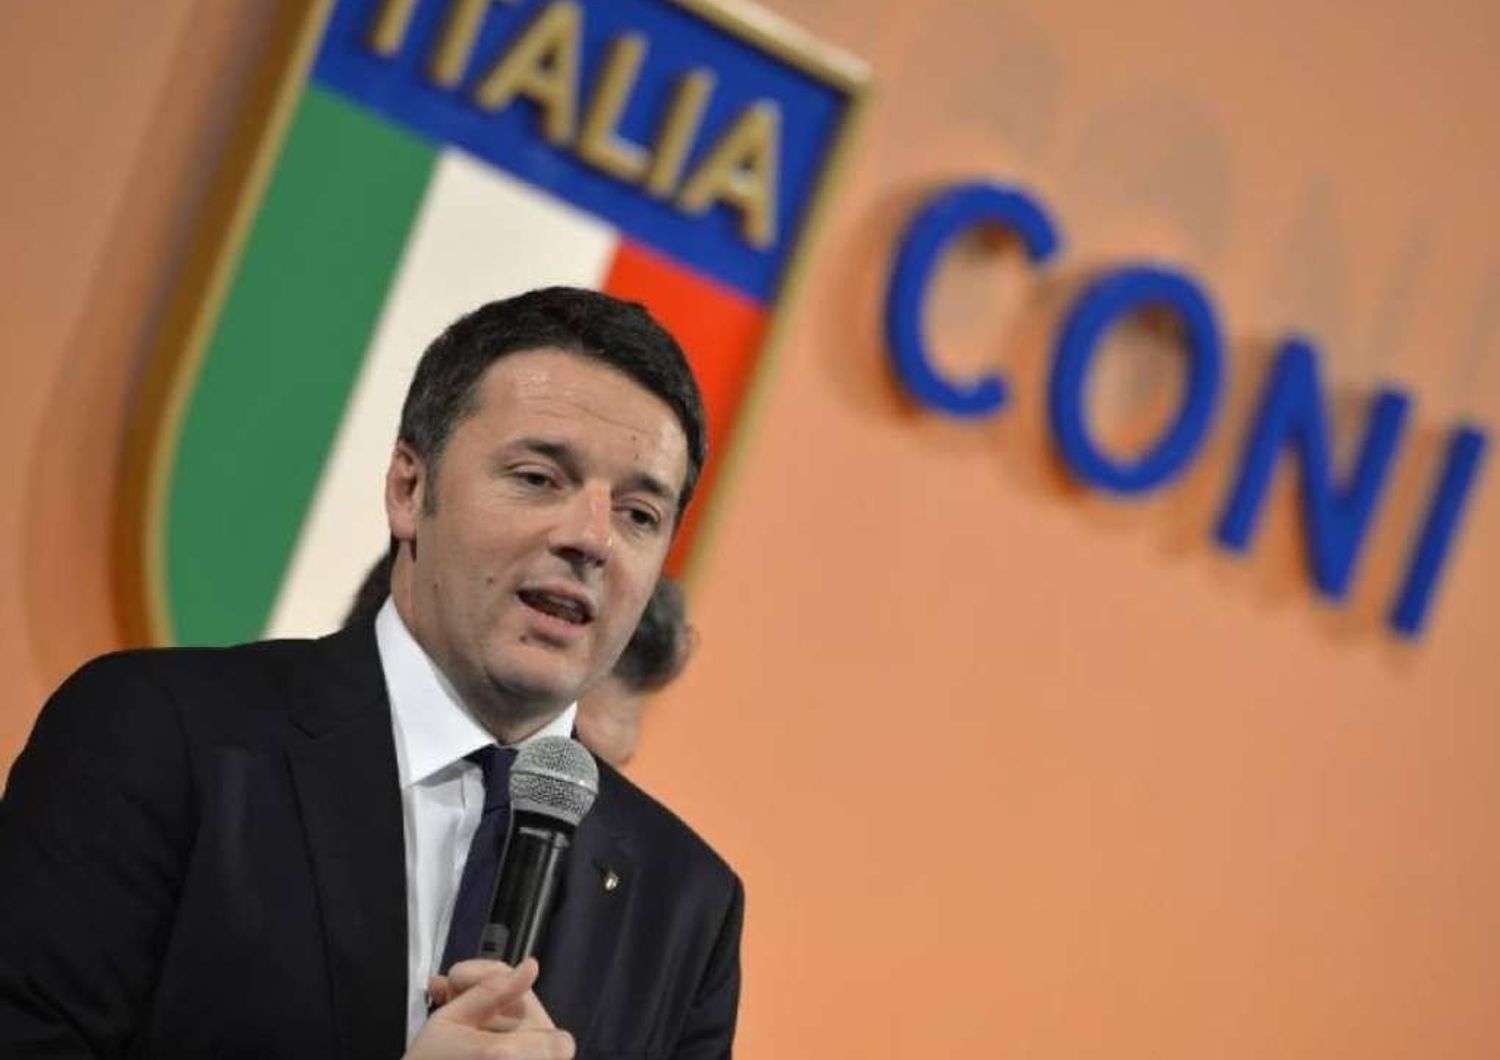 Renzi, Italia si candidera' "A Roma Giochi Olimpici 2024"